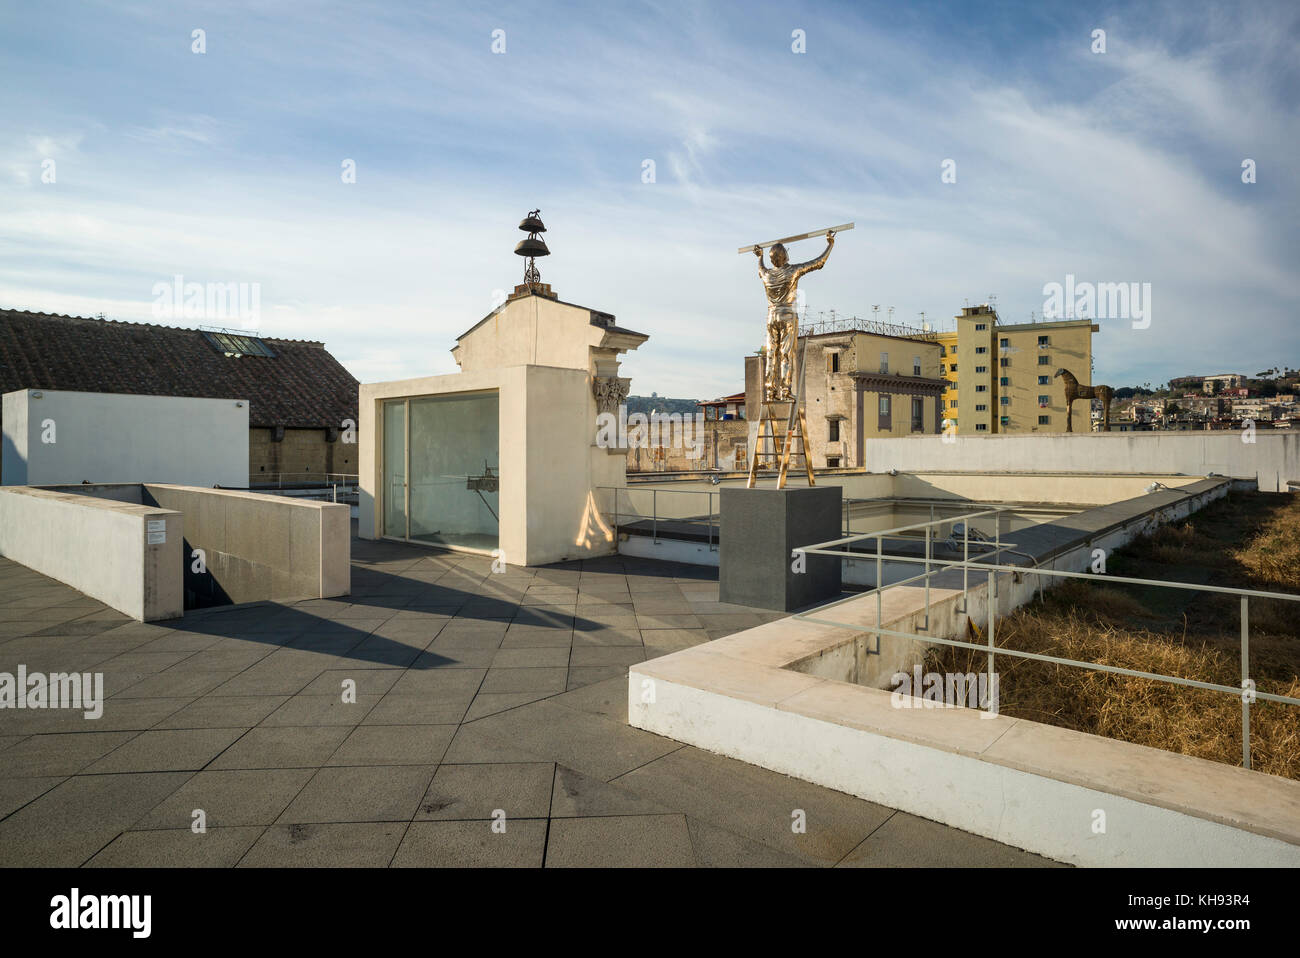 Napoli. L'Italia. MADRE Museo d'Arte Contemporanea Donnaregina, il museo di arte contemporanea, terrazza sul tetto con la scultura l'uomo misurando le nuvole, da Foto Stock